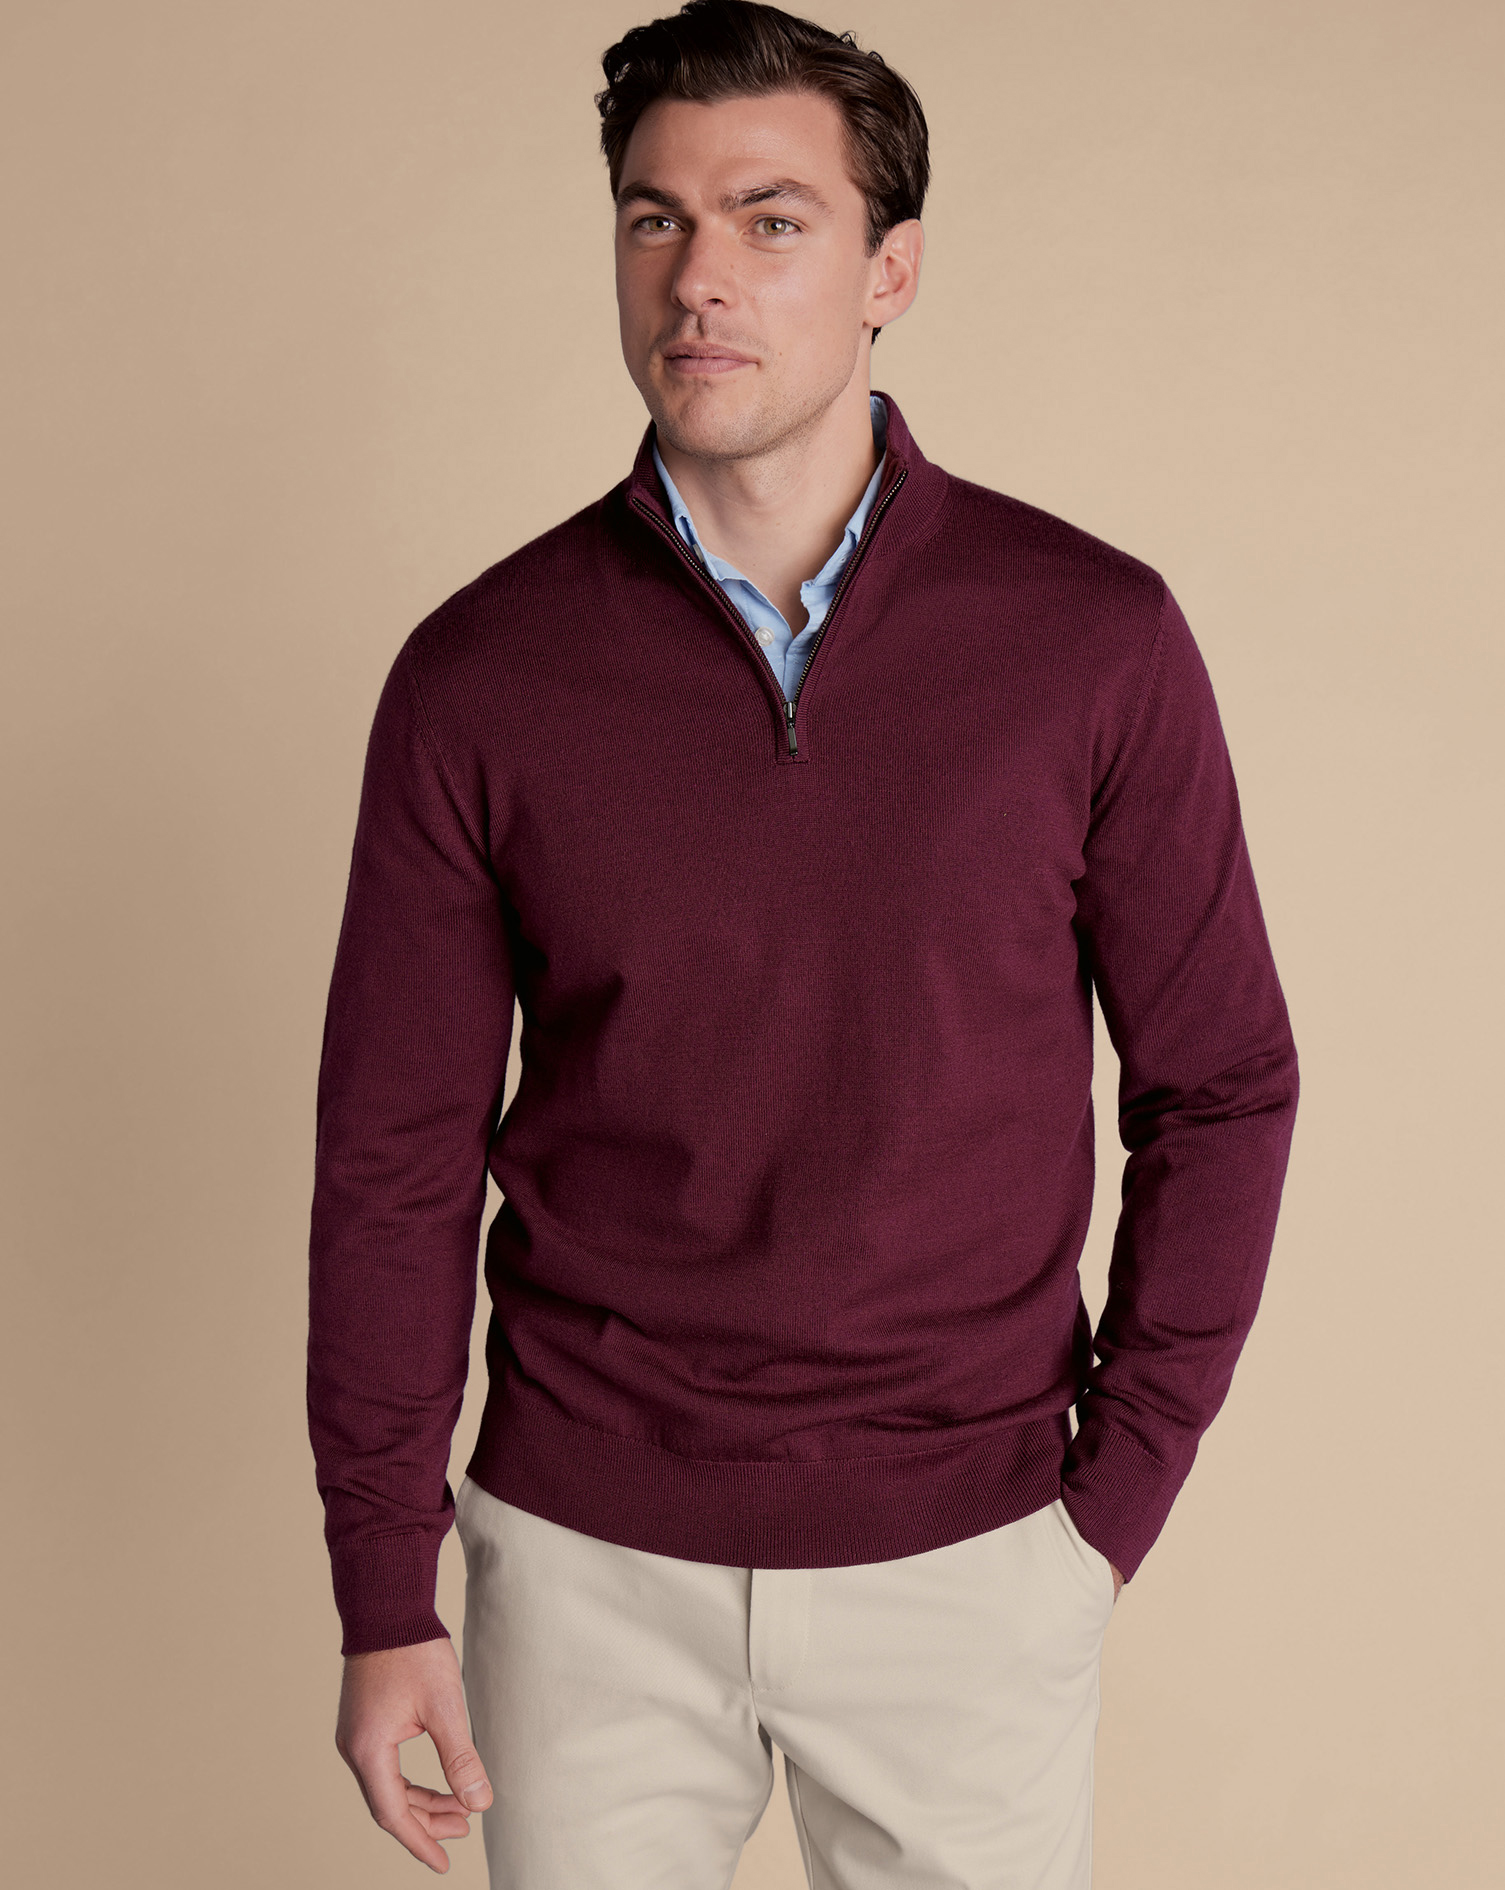 Men's Charles Tyrwhitt Zip Neck Sweater - Burgundy Red Size Medium Merino
